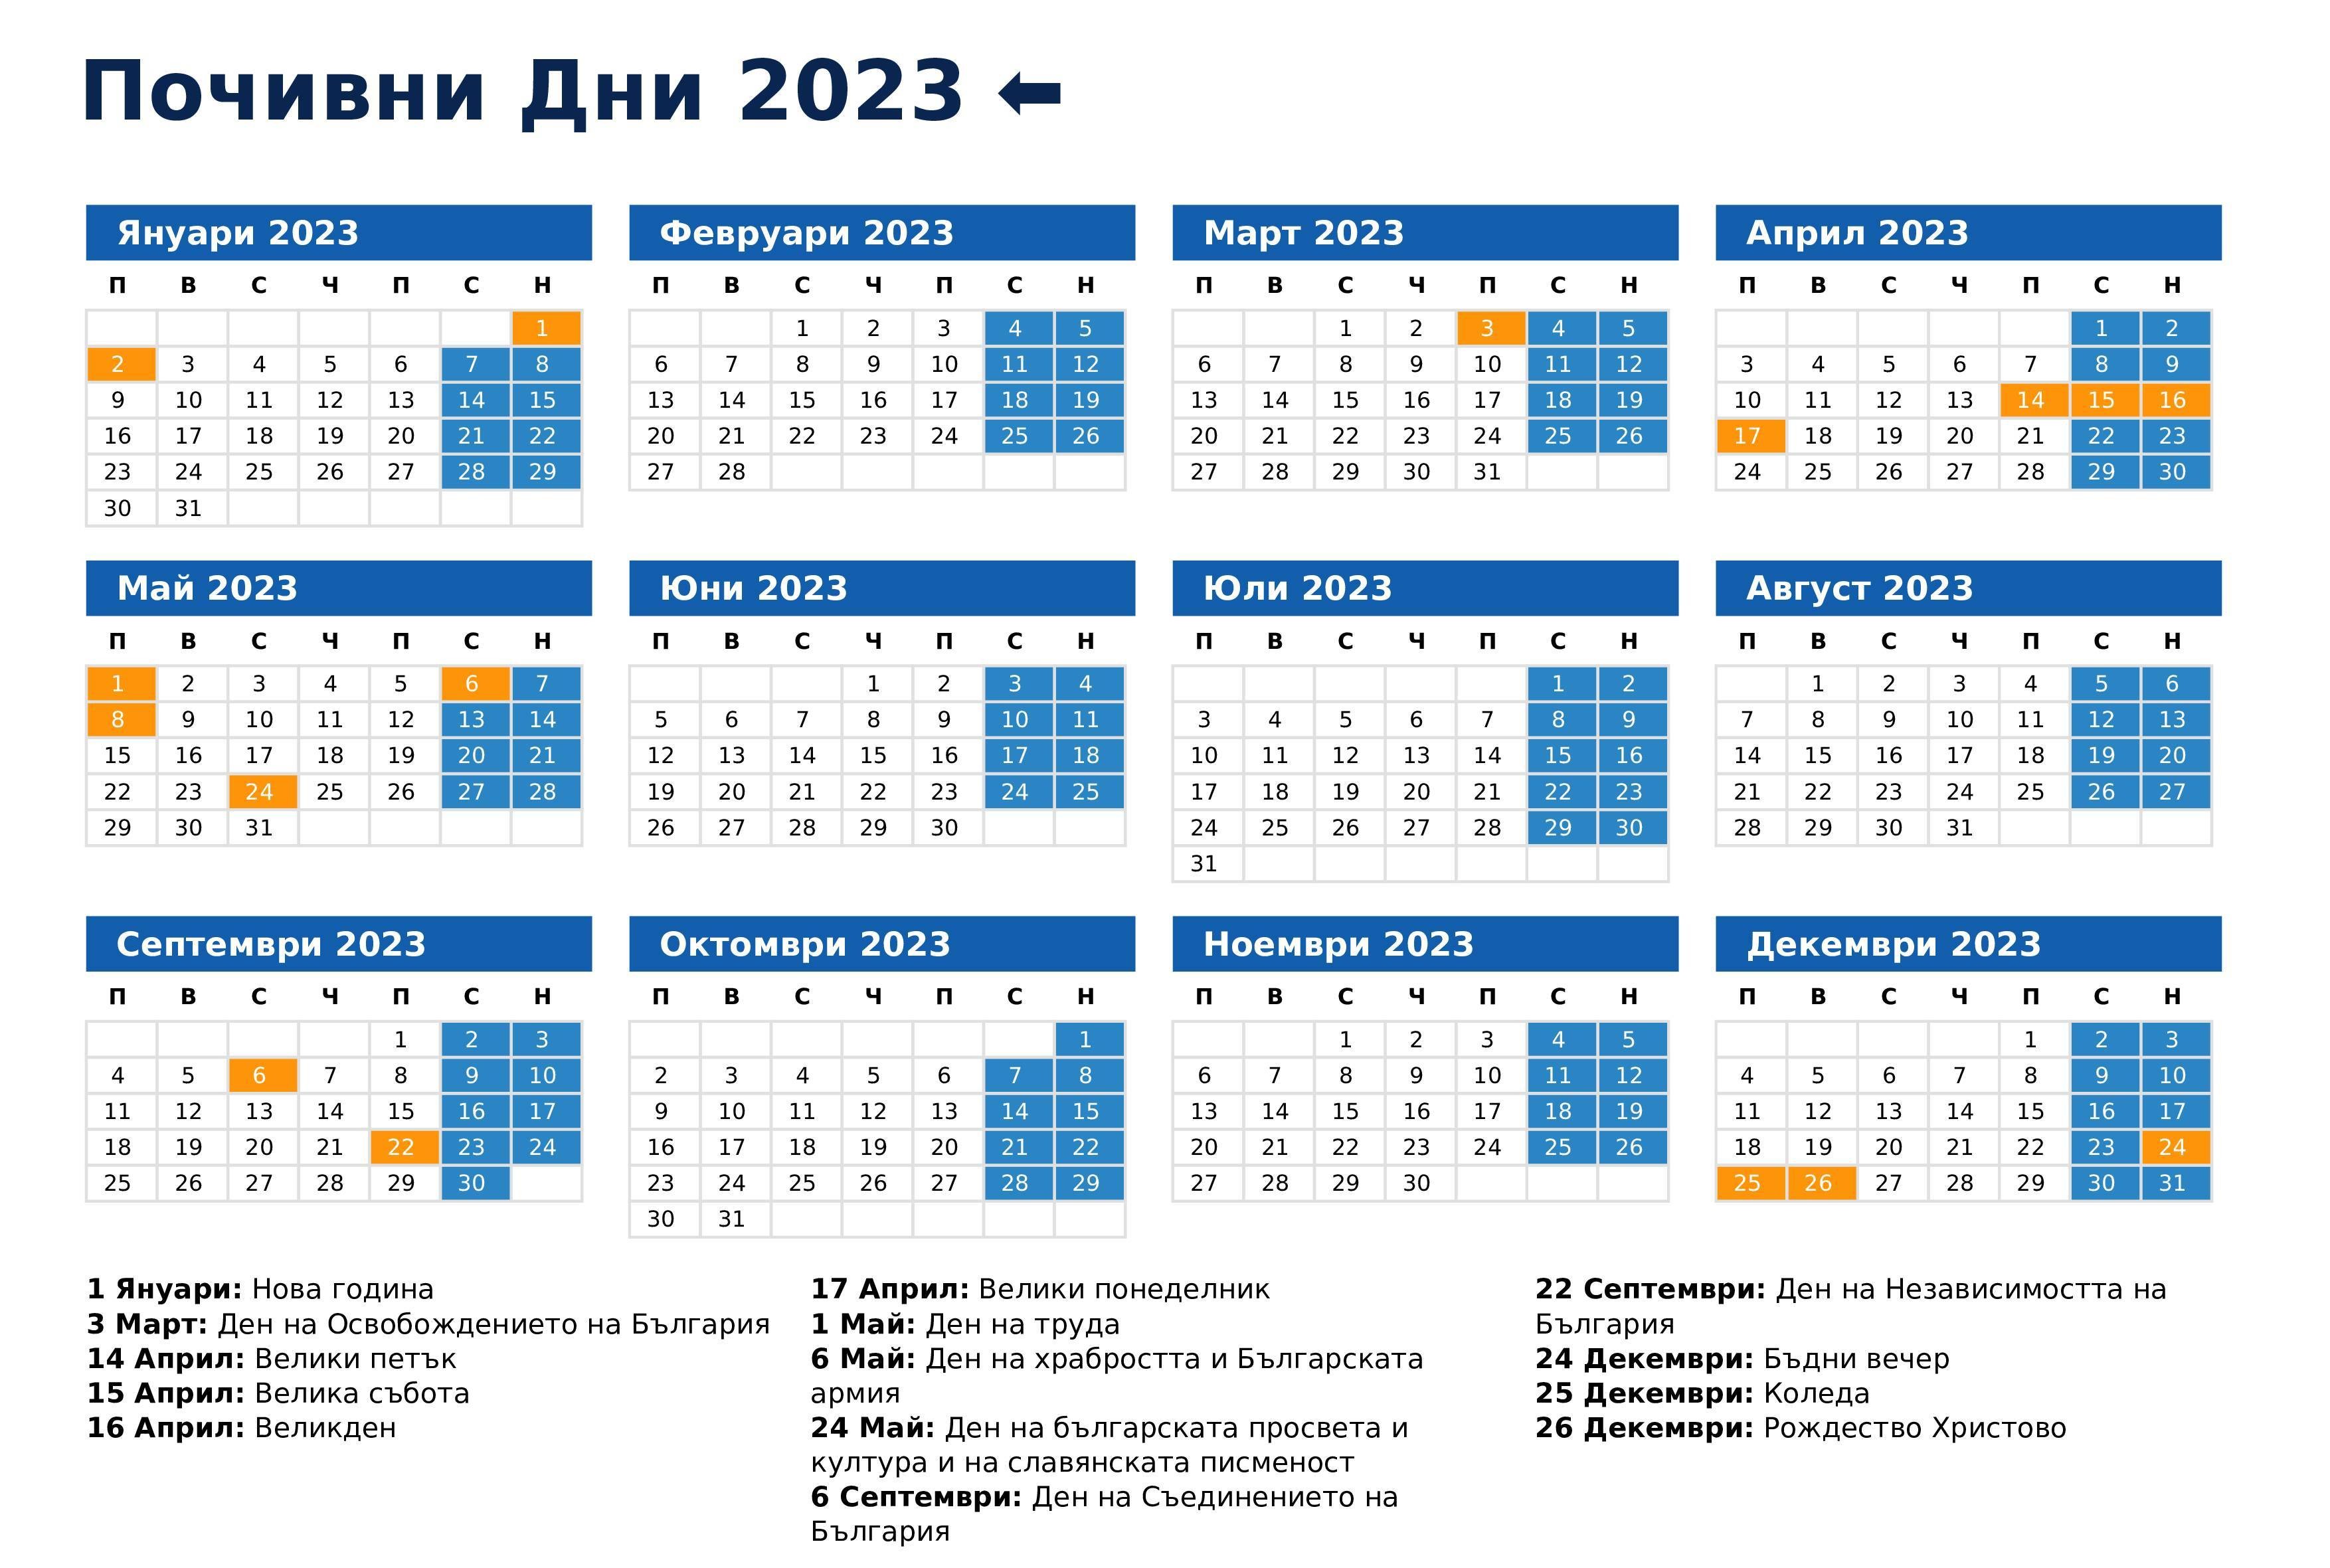  Кои са официалните почивни дни през 2023 г.?